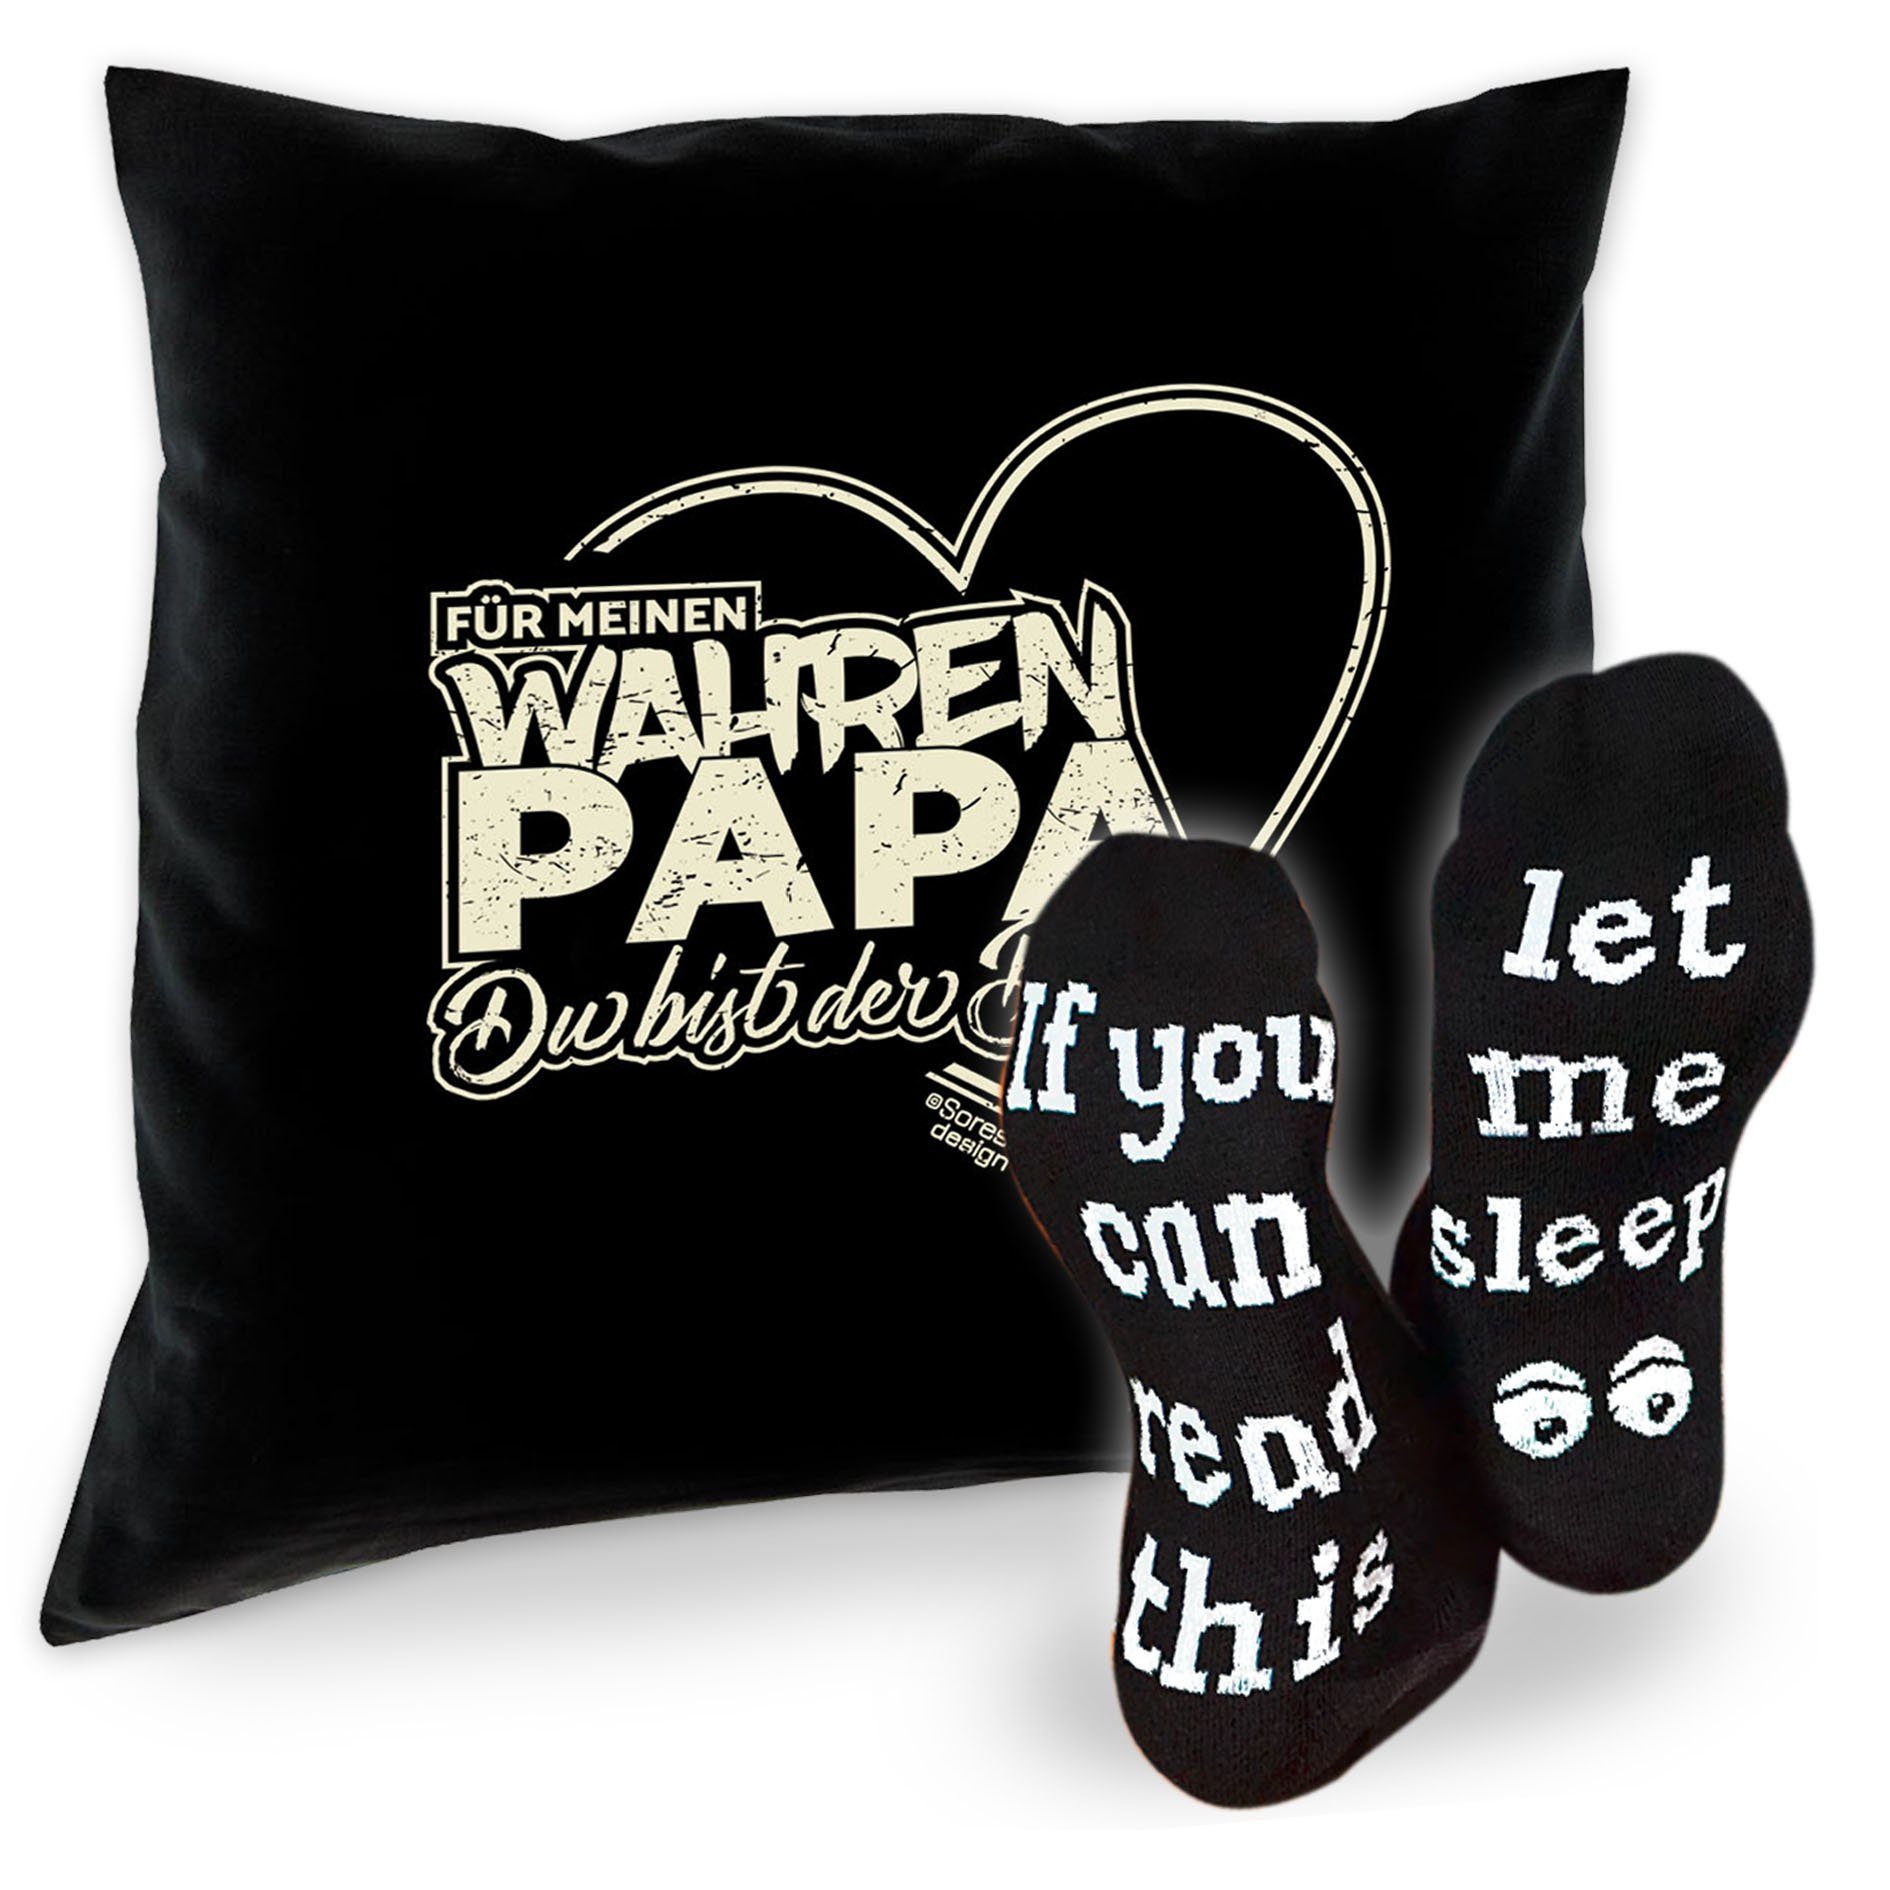 Sleep, schwarz wahren Socken Sprüche Dekokissen meinen Soreso® Väter Geschenke für Für Papa & Geschenkidee Kissen